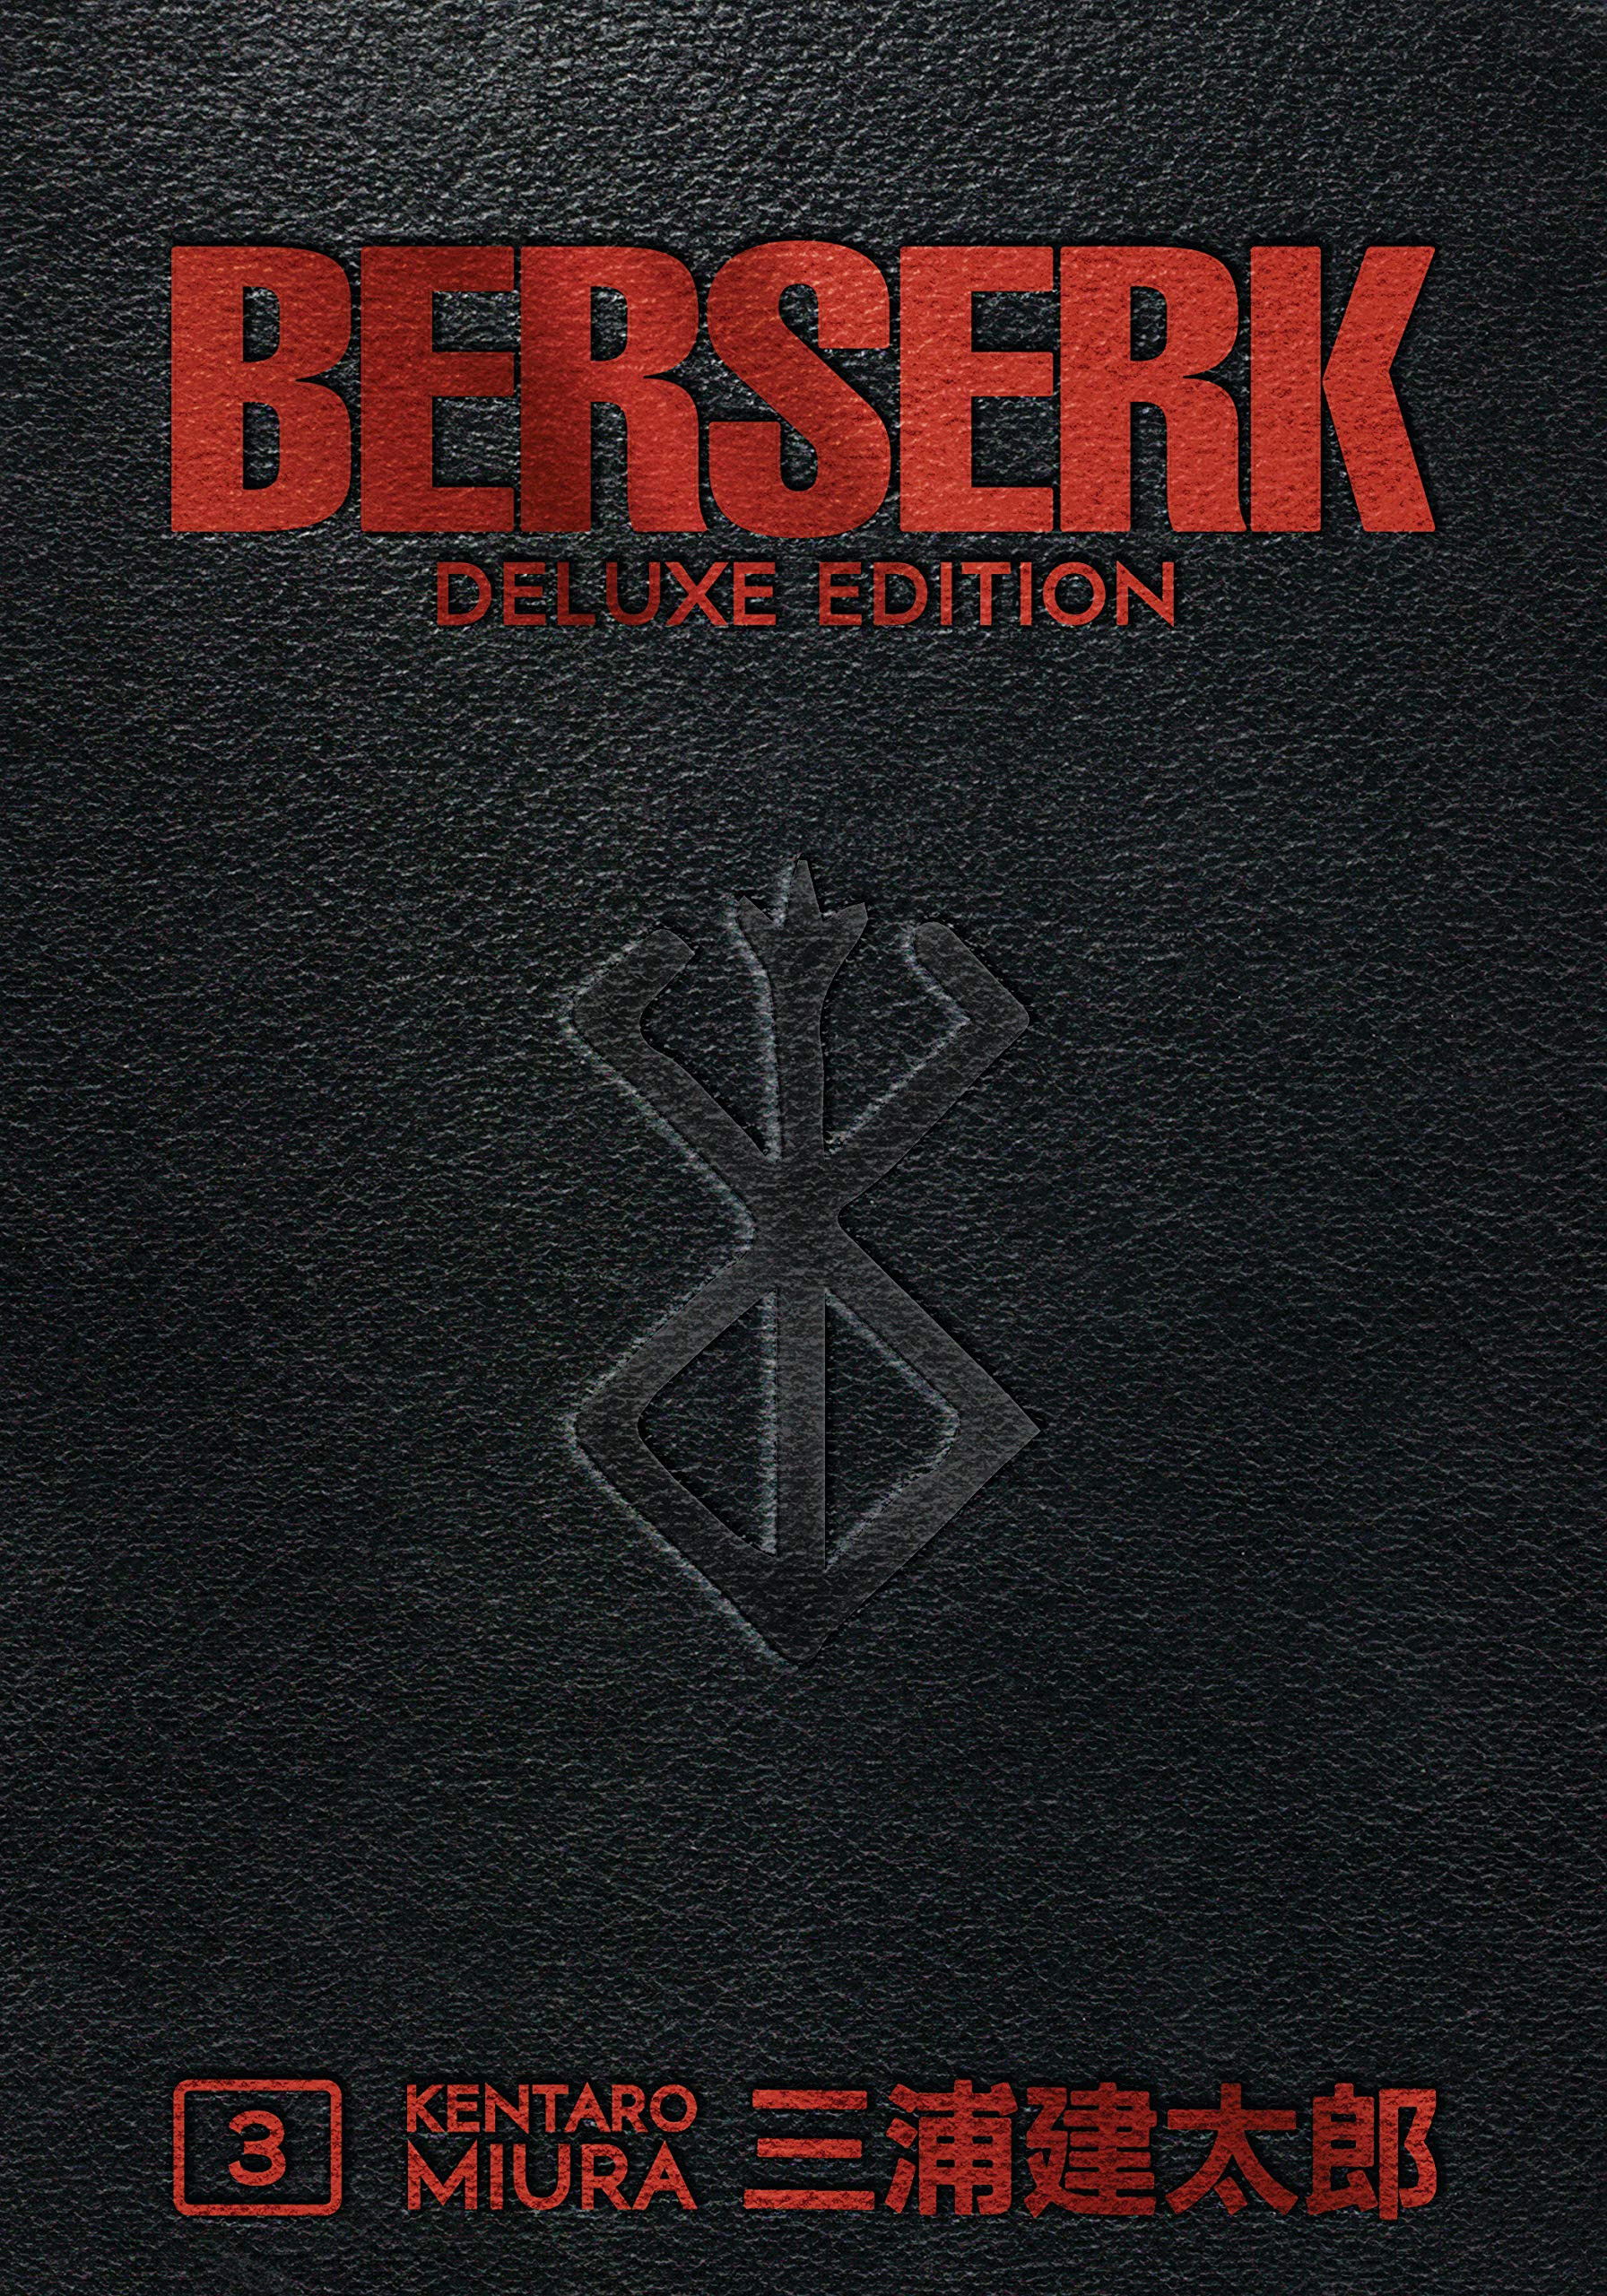 Berserk Deluxe 3